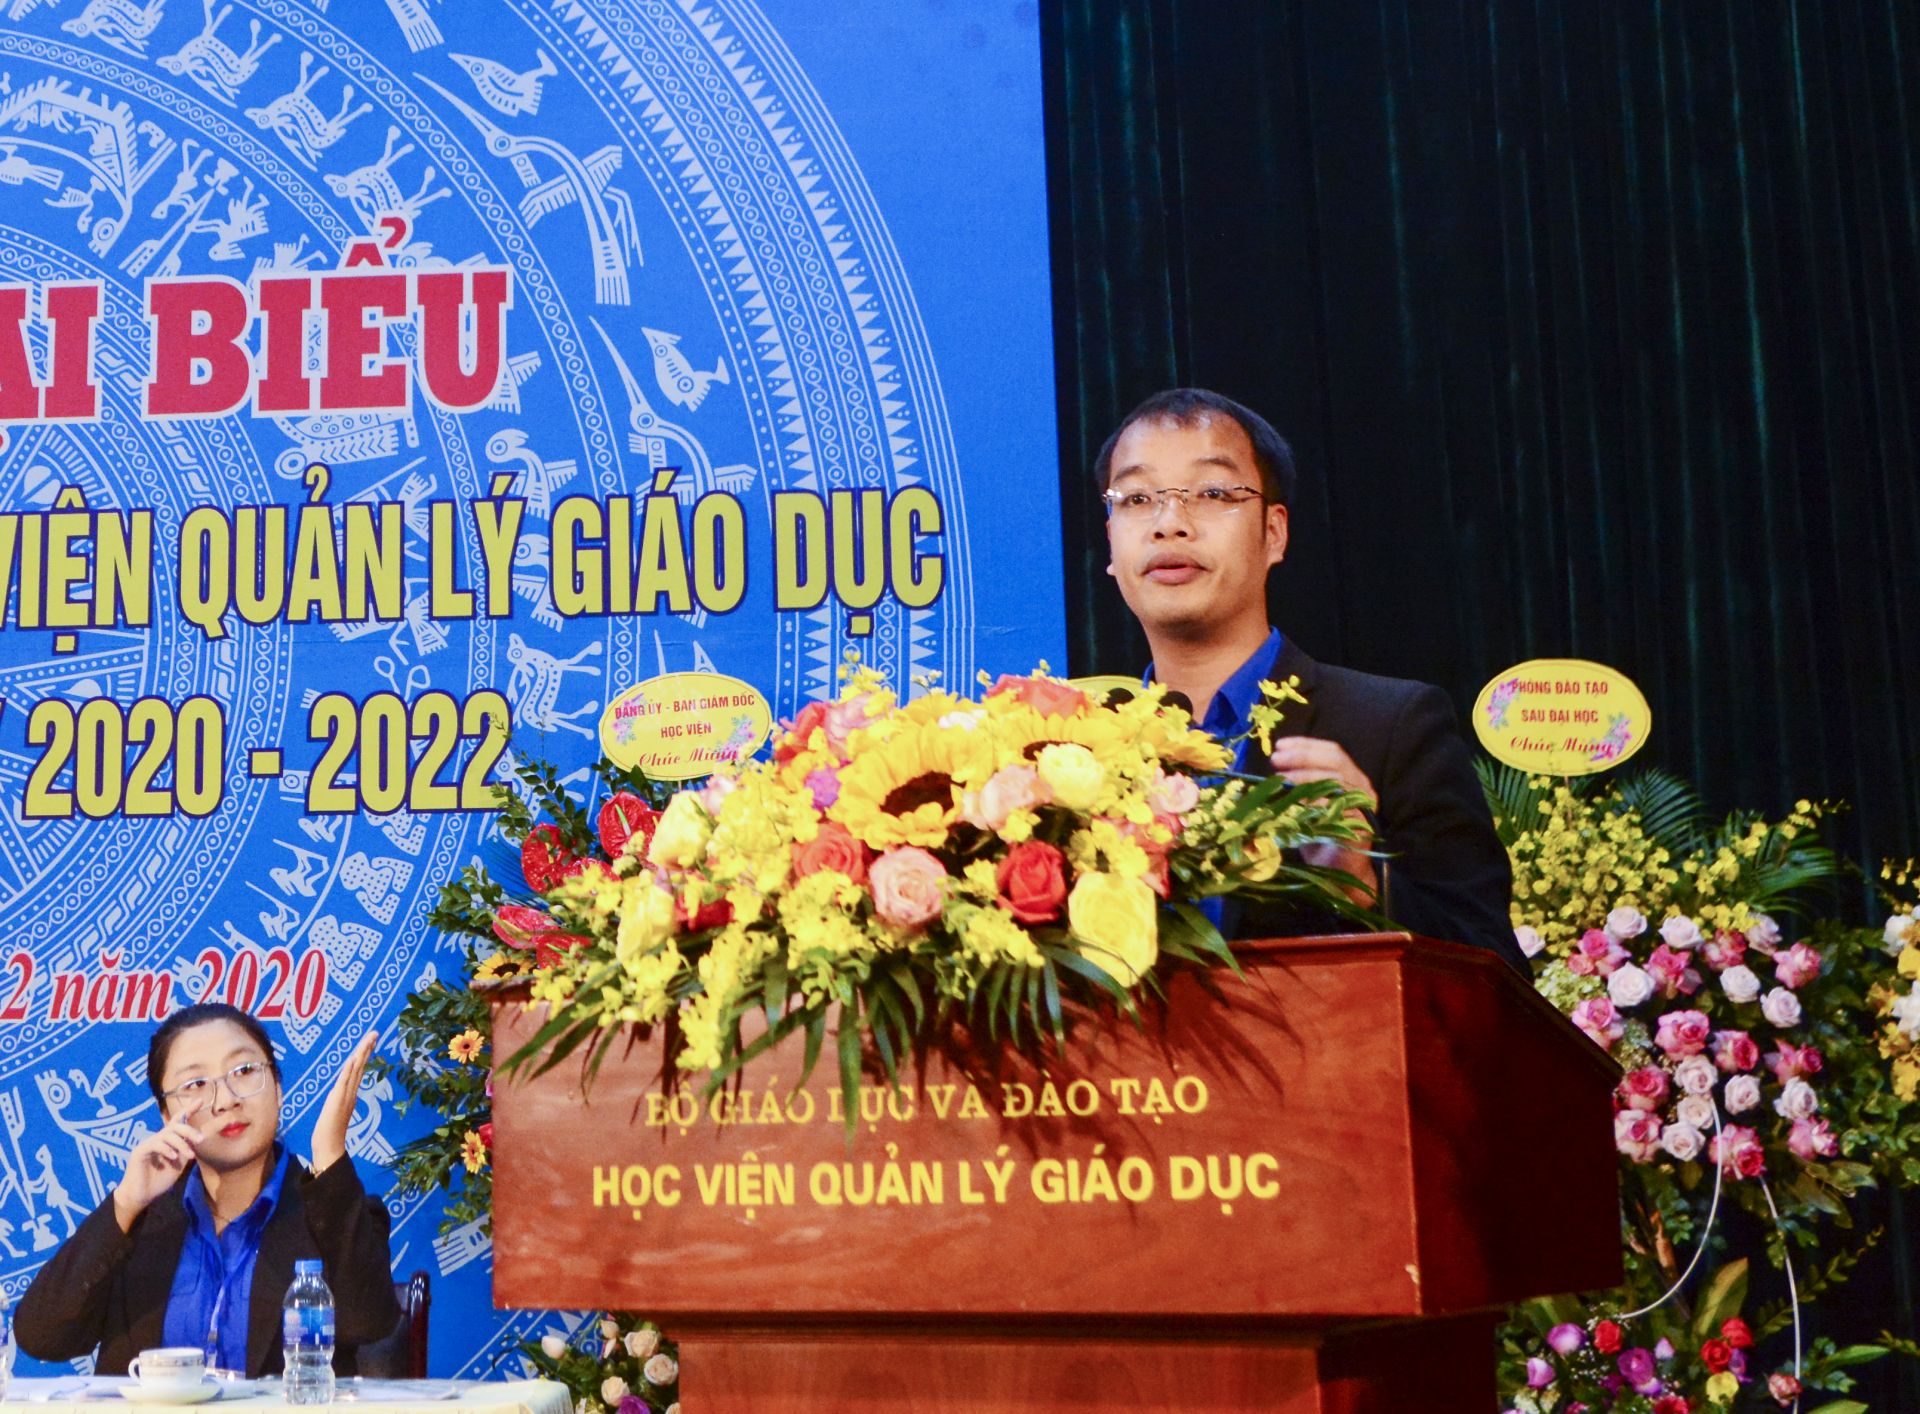 Đ/c Tạ Văn Hai, Phó Bí thư Đoàn Thanh niên Học viện nhiệm kỳ 2020-2022